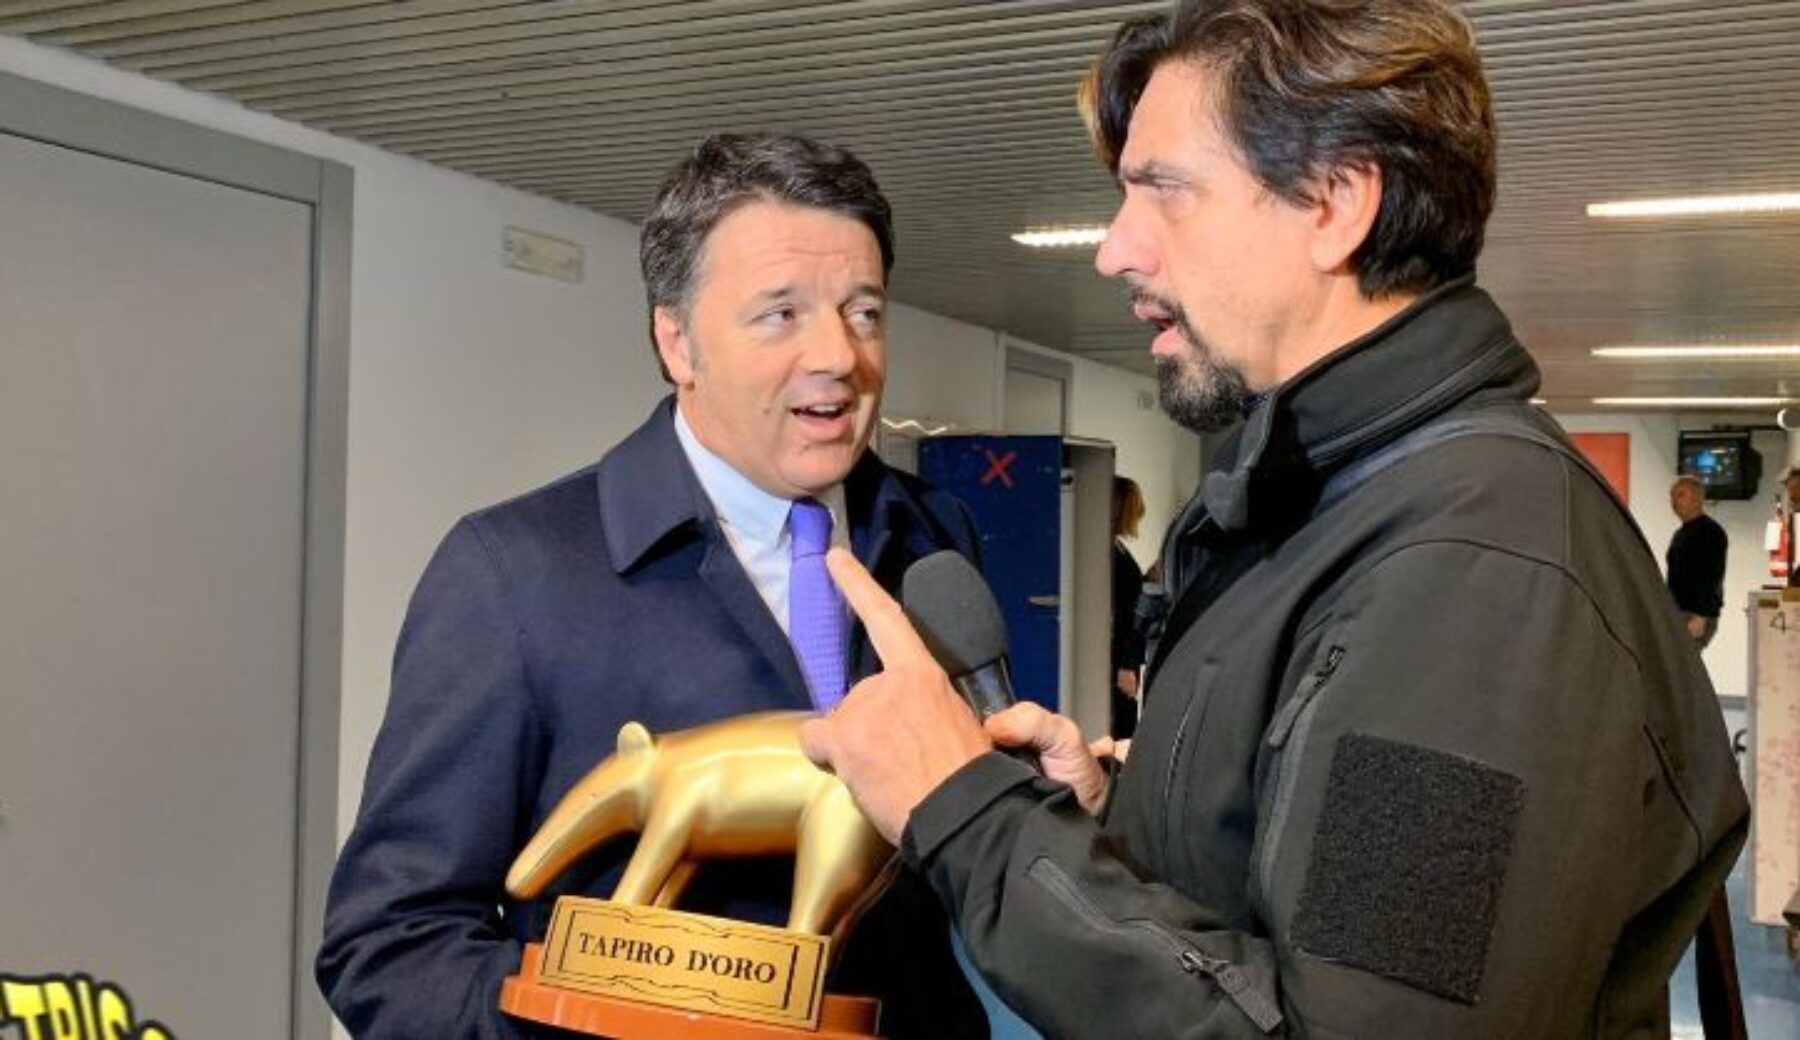 Questa sera a Striscia la notizia Matteo Renzi riceve il Tapiro d’oro